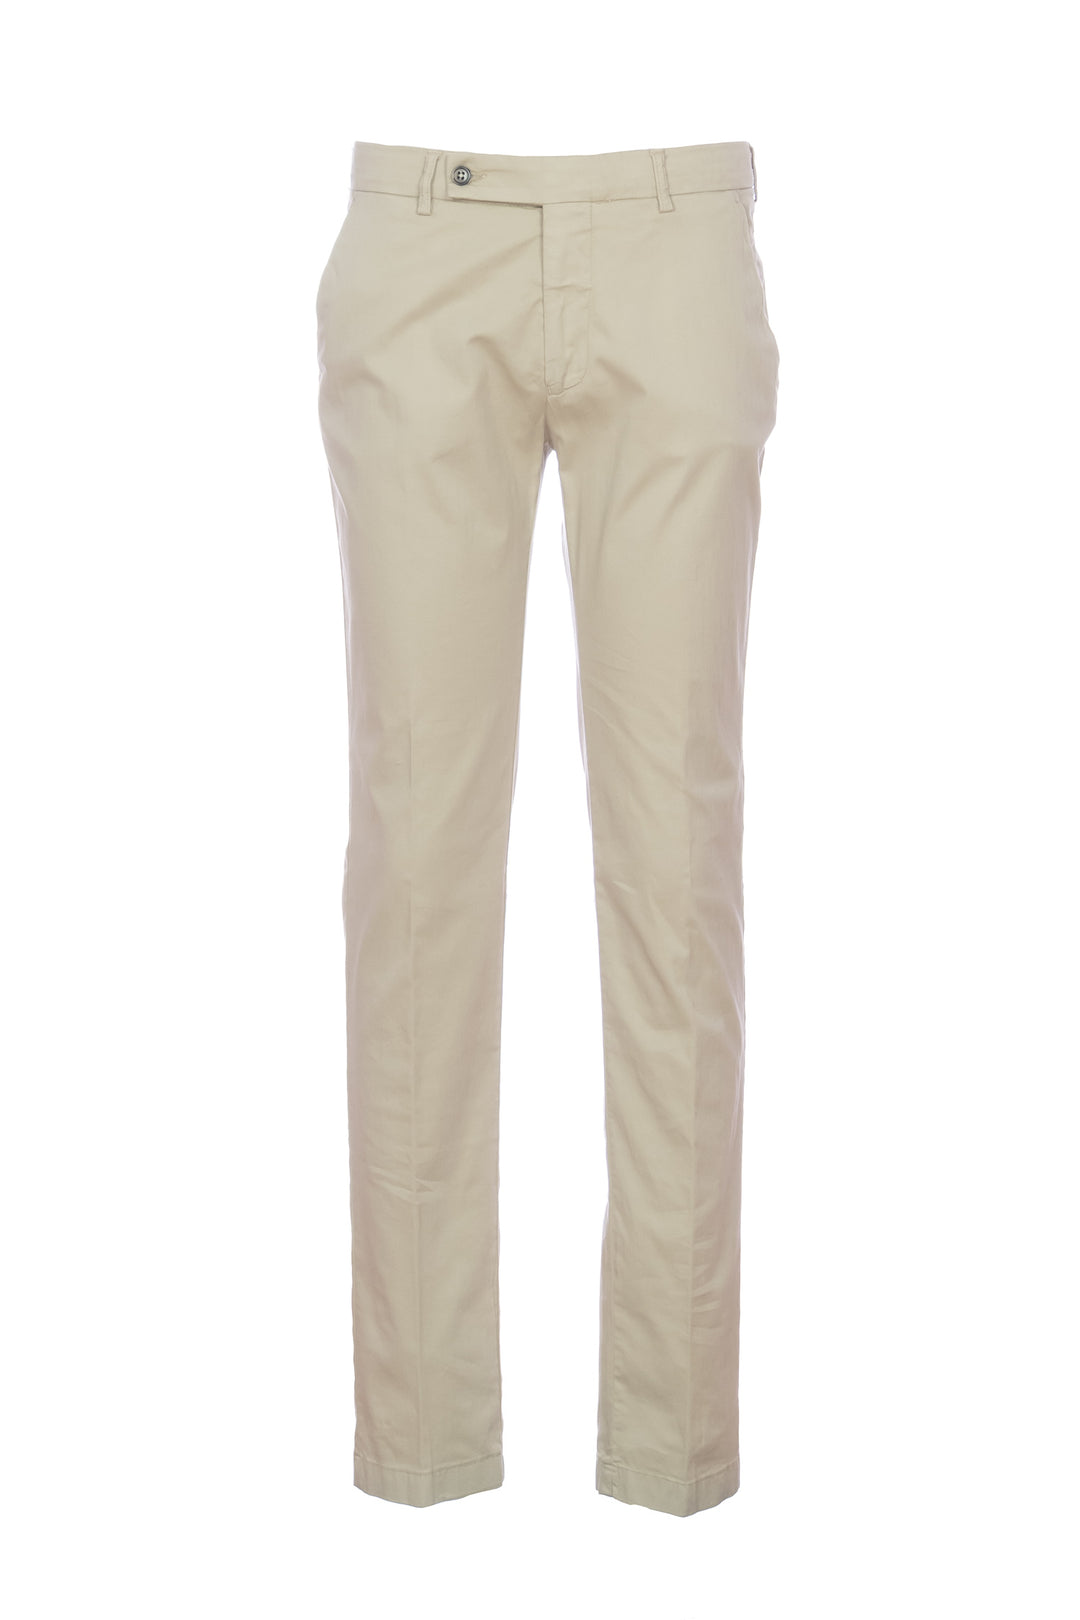 BERWICH Pantalone “MORELLO” beige in misto cotone elasticizzato e seta - Mancinelli 1954